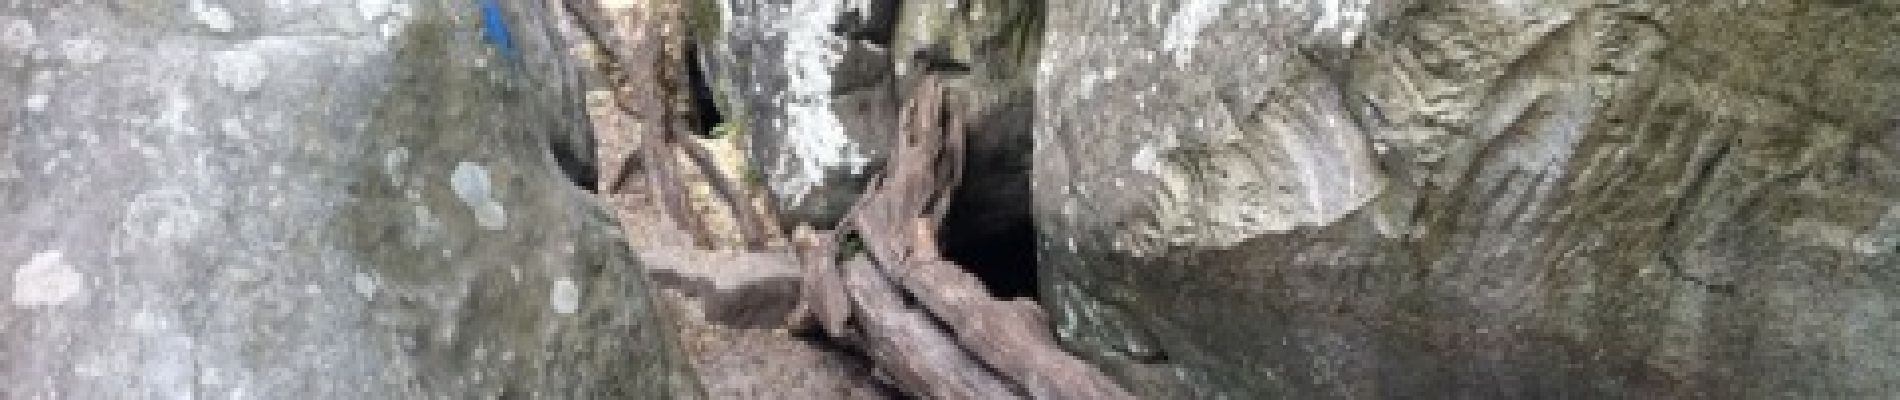 Point d'intérêt Fontainebleau - caverne des brigands - Photo